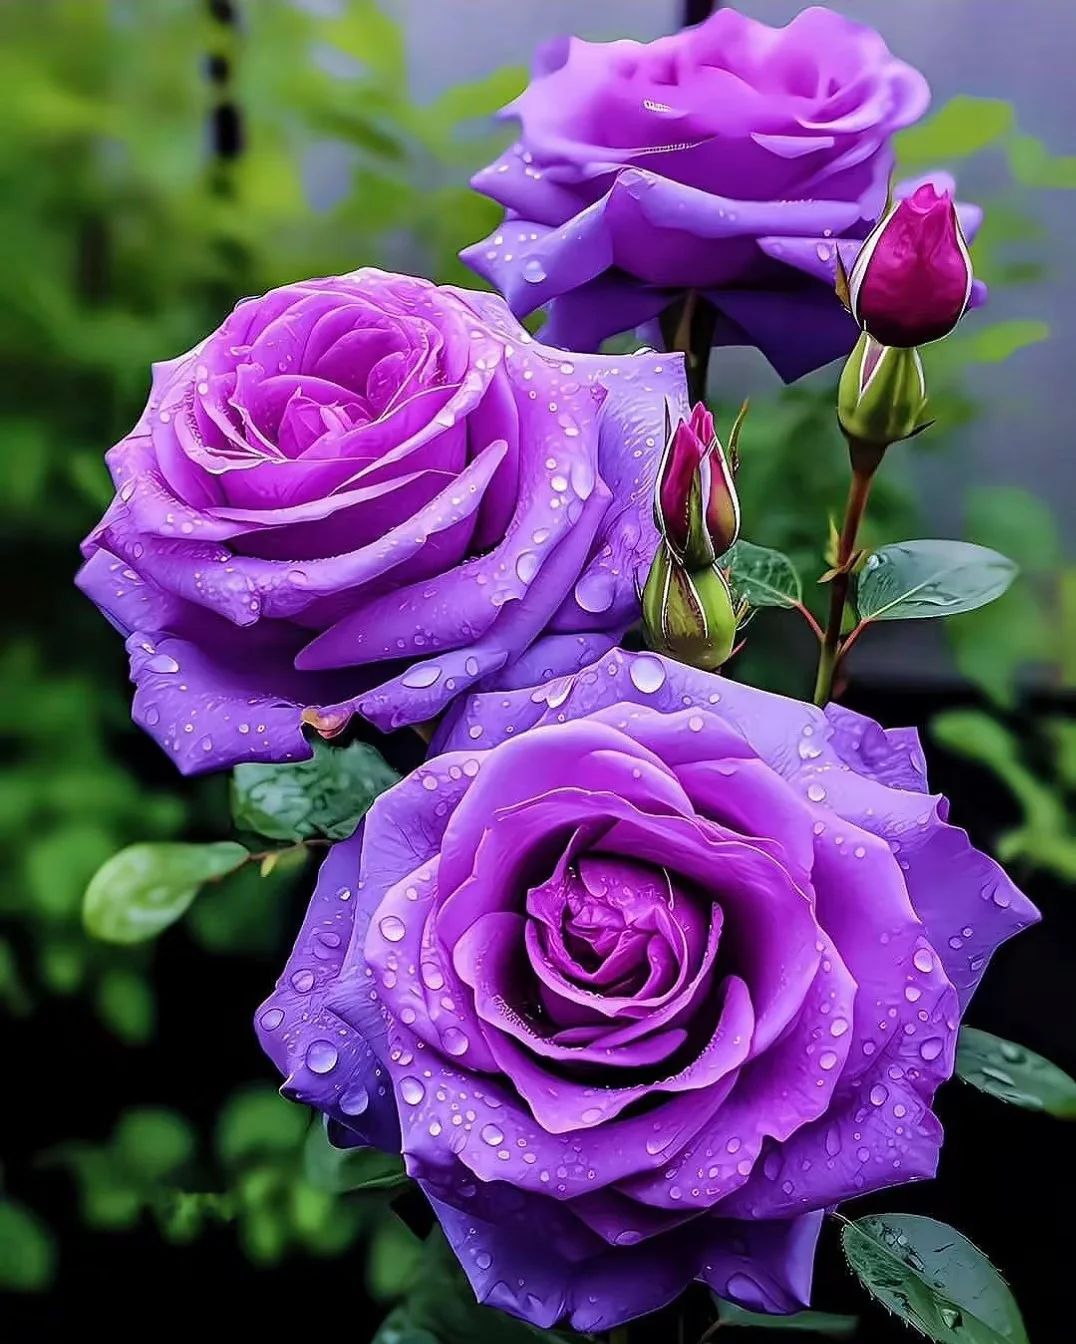 Rare Purple Rose Plant Seeds for Home Gardens